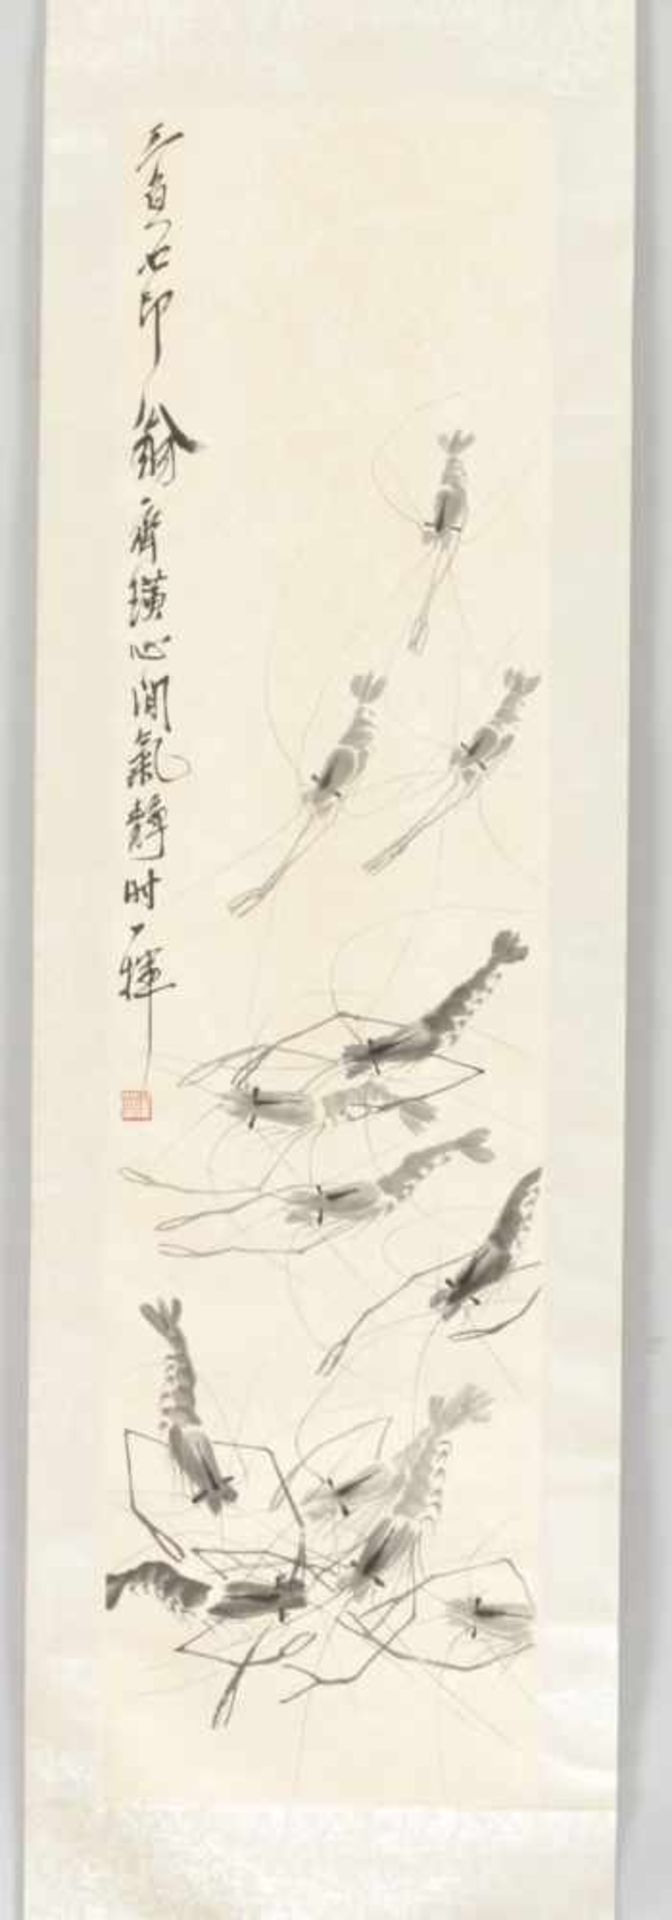 3 HängerollenPapier/Textil/Holz u.a., China, Mitte 20.Jh. Drucke nach berühmten Vorlagen. 1 x - Image 3 of 4